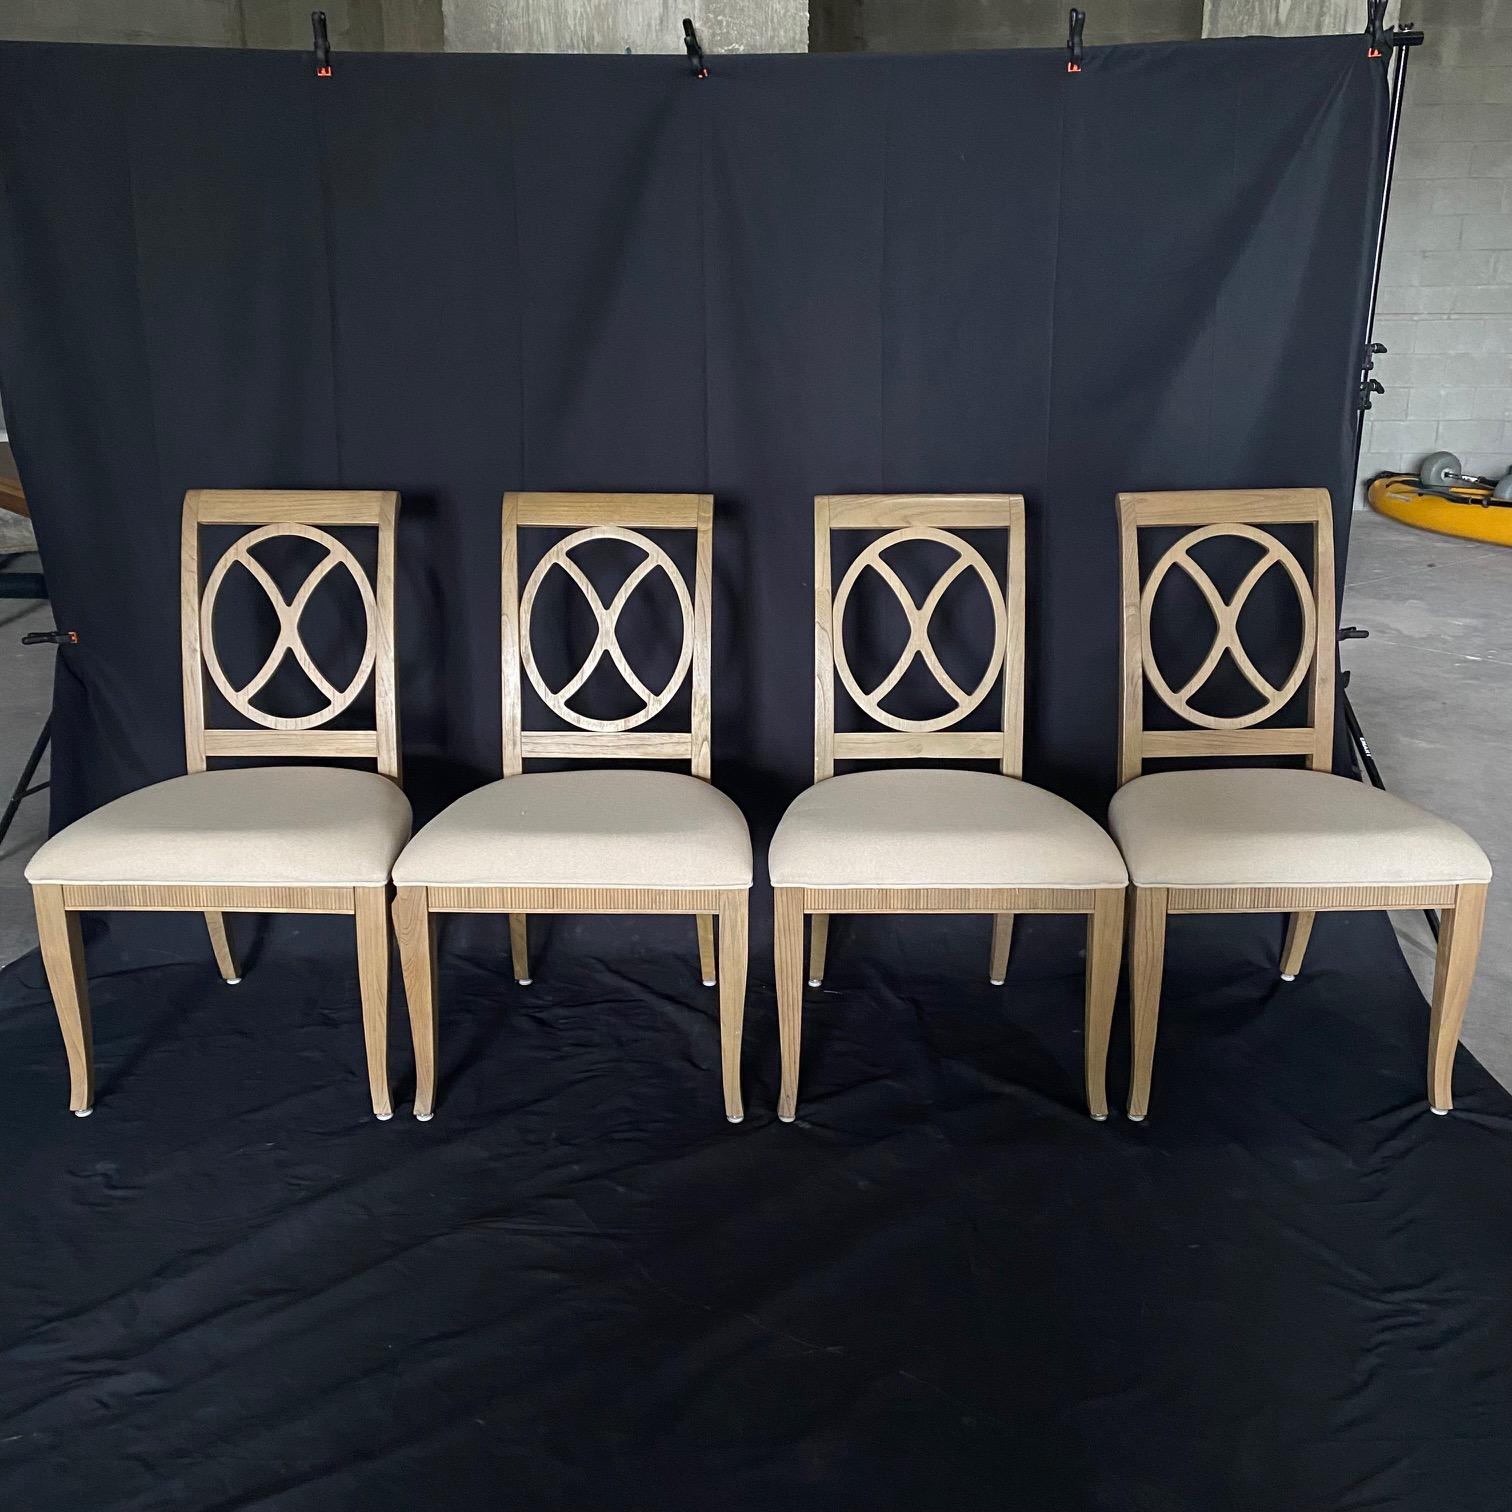 Cet ensemble de 6 chaises d'appoint en chêne blanchi de Hekman Furniture Urban Retreat présente un beau contraste de couleurs sourdes. Jolies traverses d'assise cannelées et finition kaki.
Nouveau tissu neutre de haute qualité en coton/poly mélangé